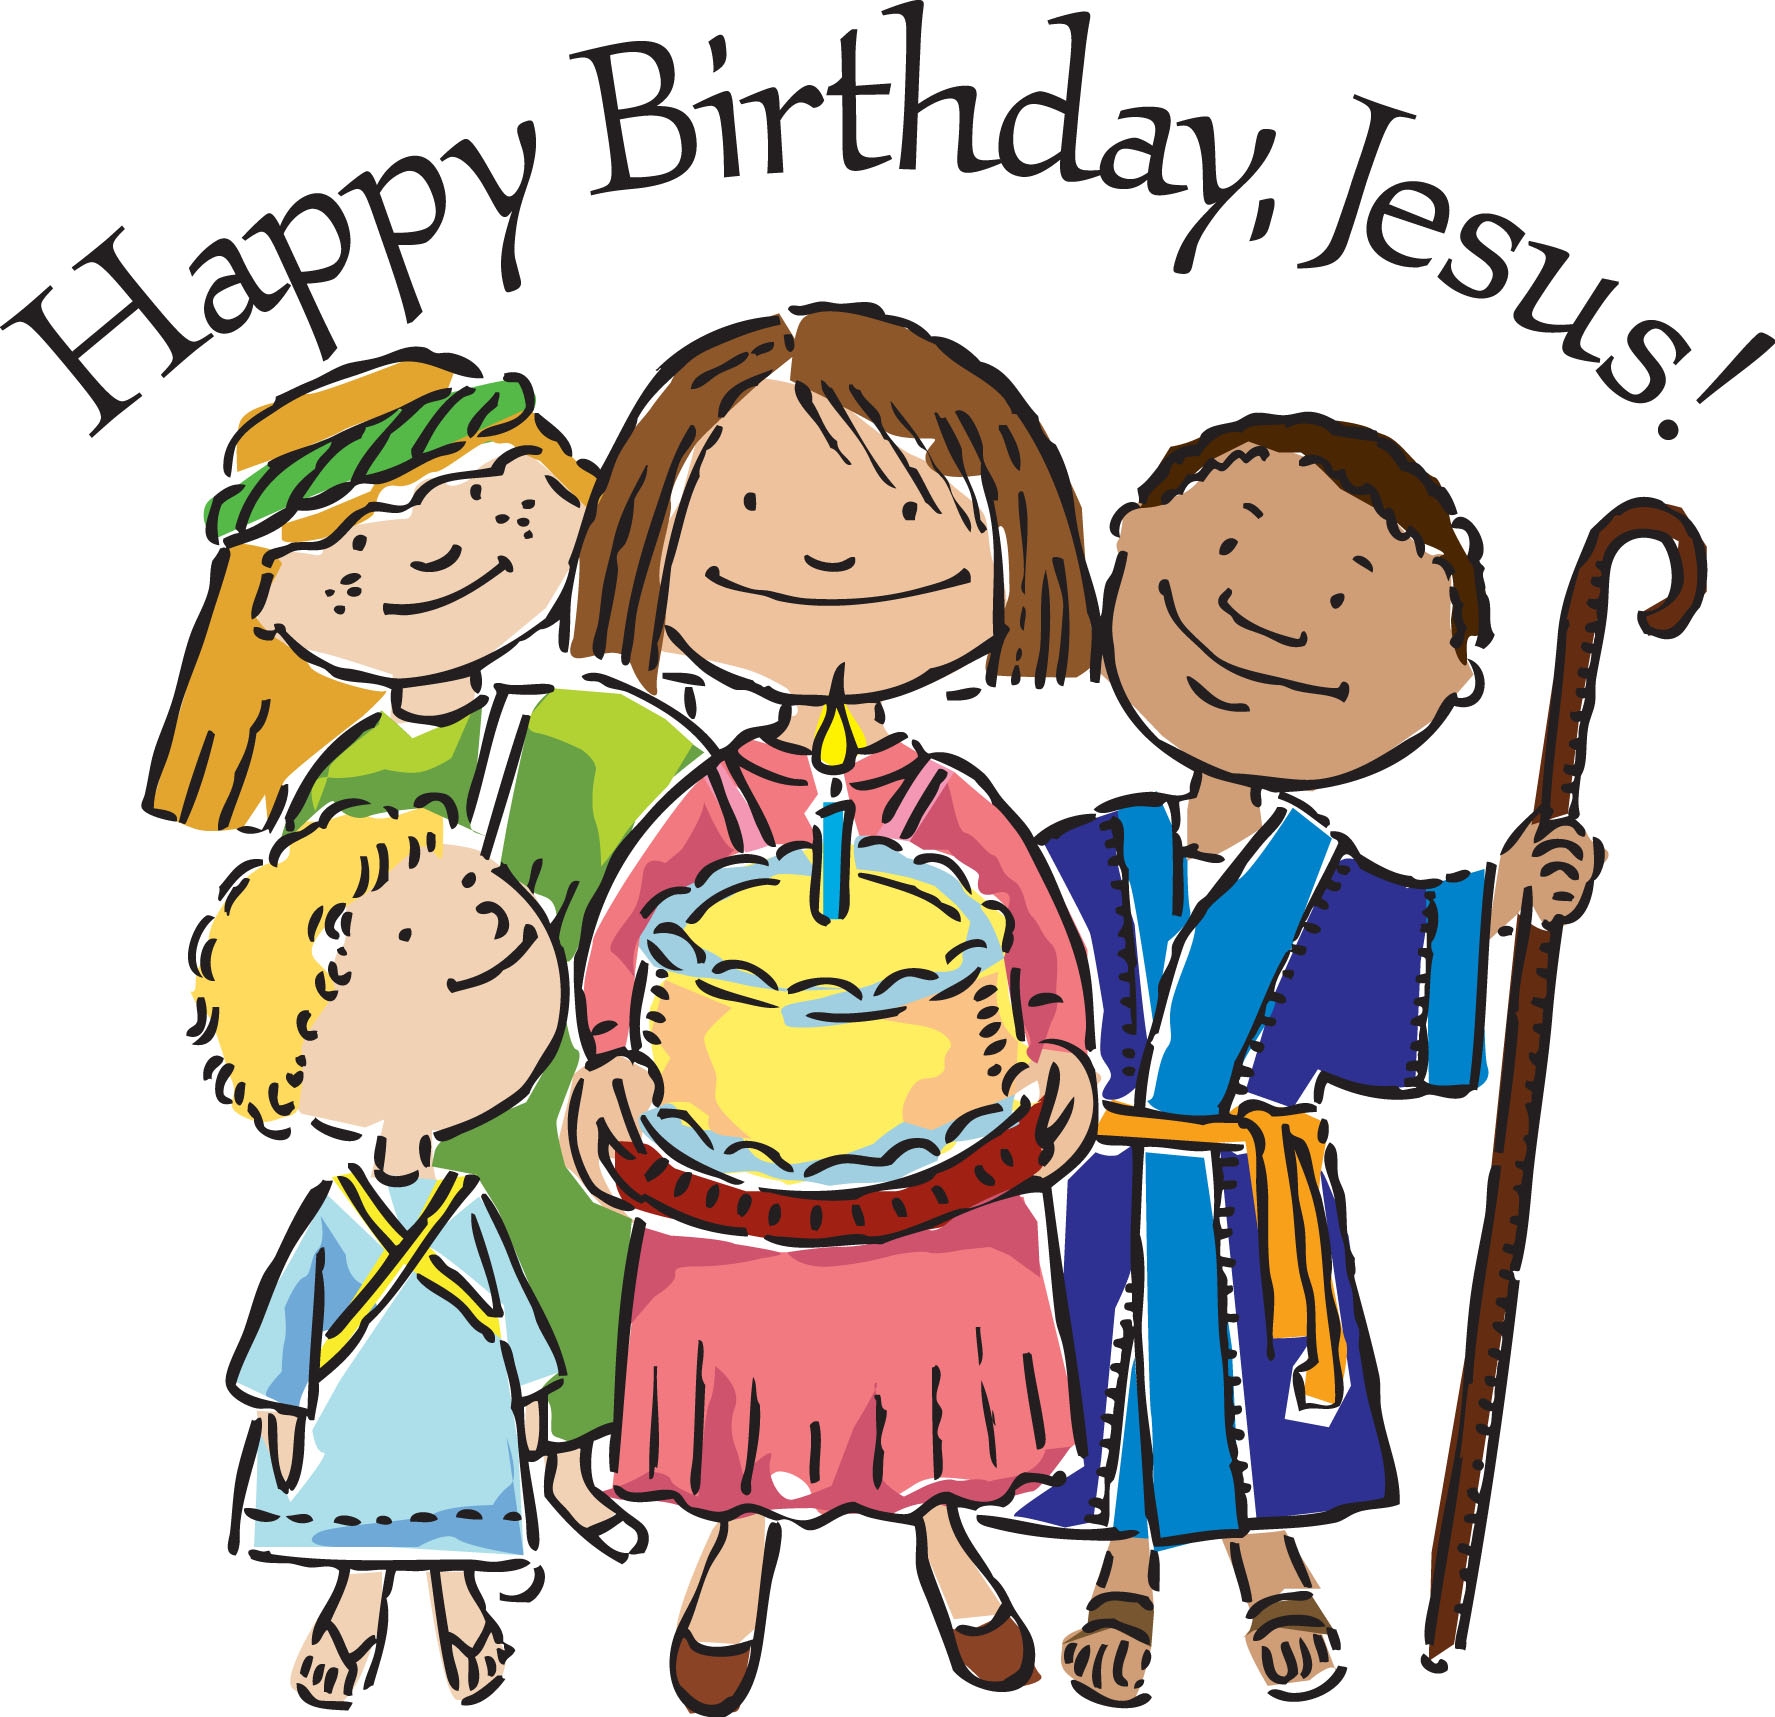 Happy Birthday Jesus Clipart